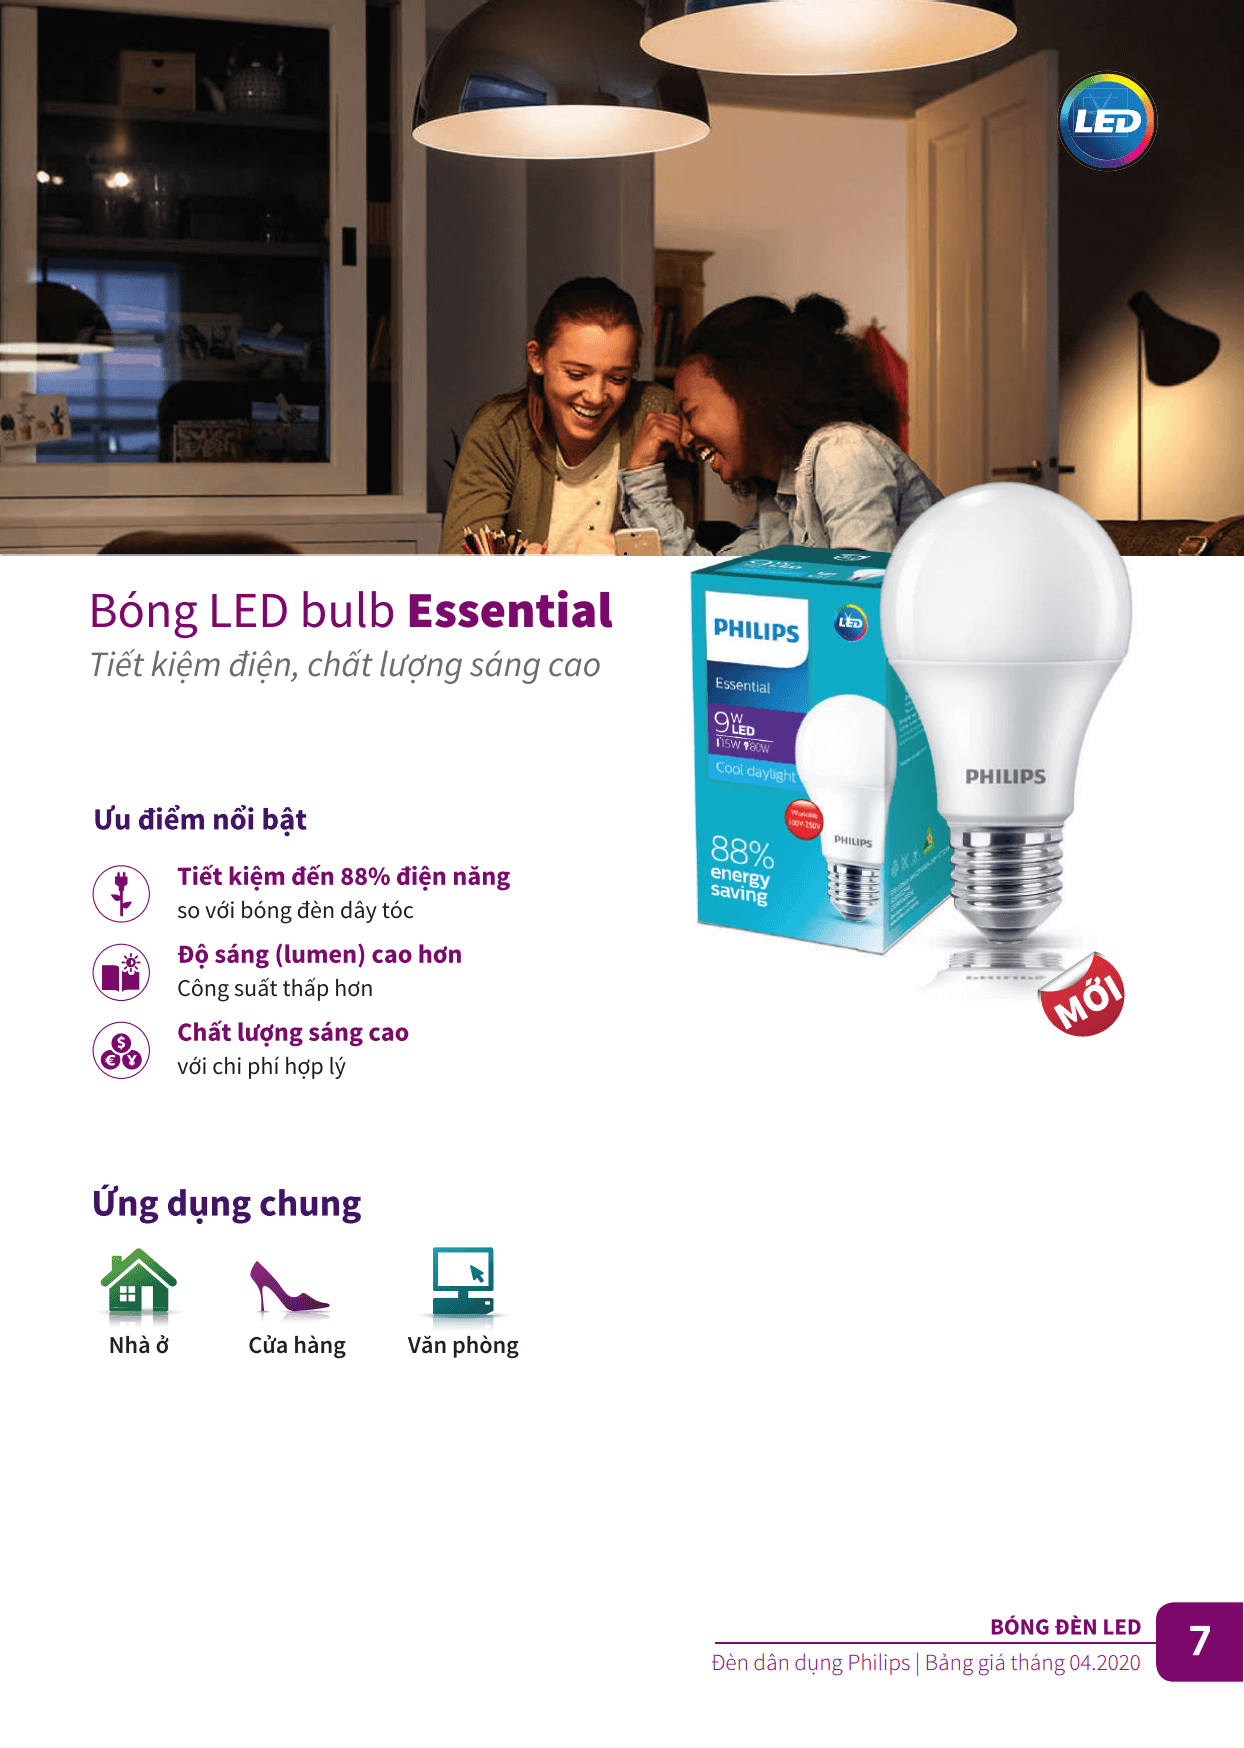 Bóng Led Philips Bulb Essential - Tiết kiệm điện, chất lượng sáng cao